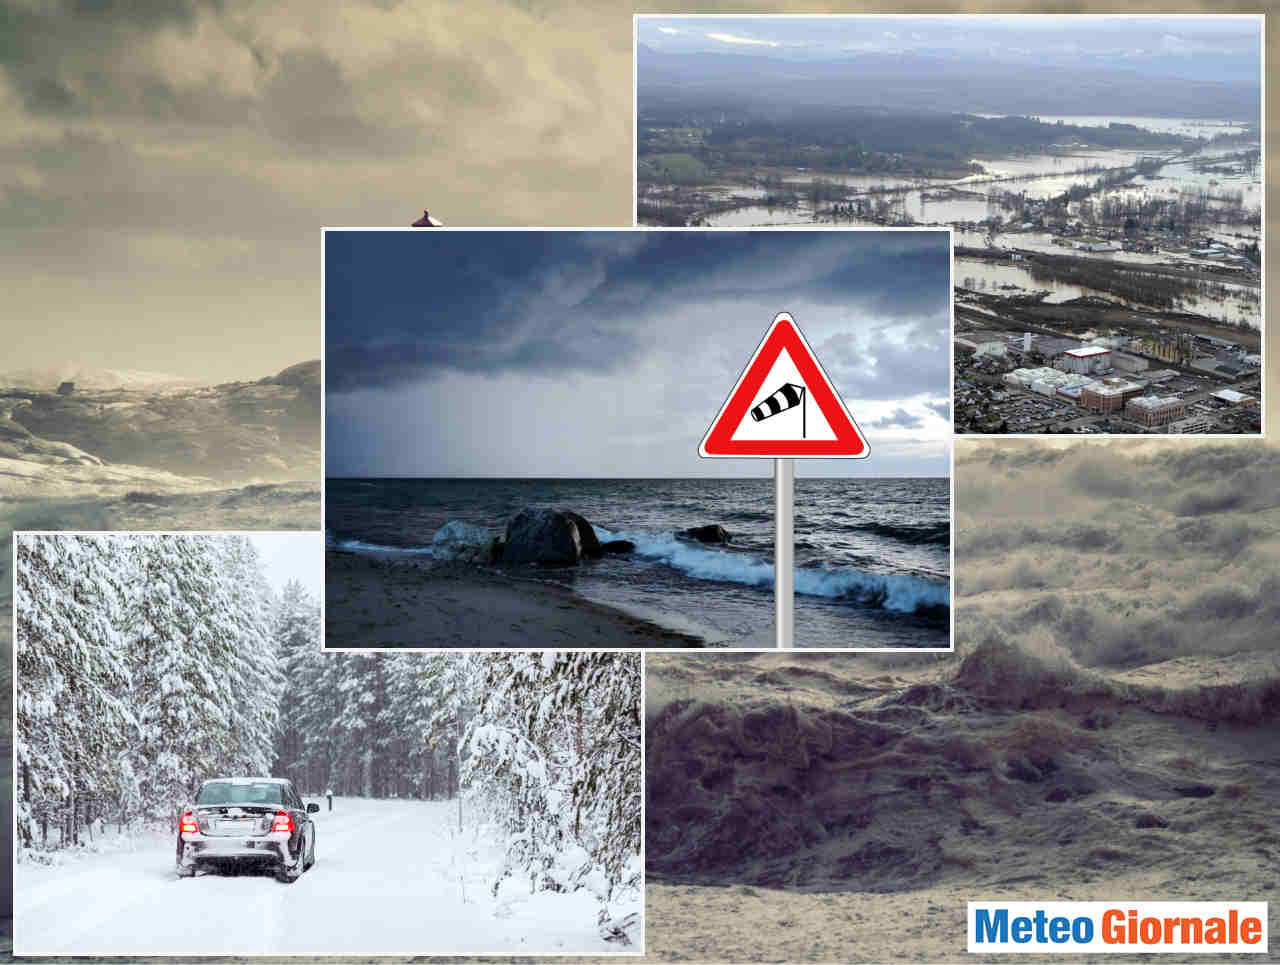 meteo-prossimi-giorni:-nuove-perturbazioni,-piogge,-neve-forte-su-alpi